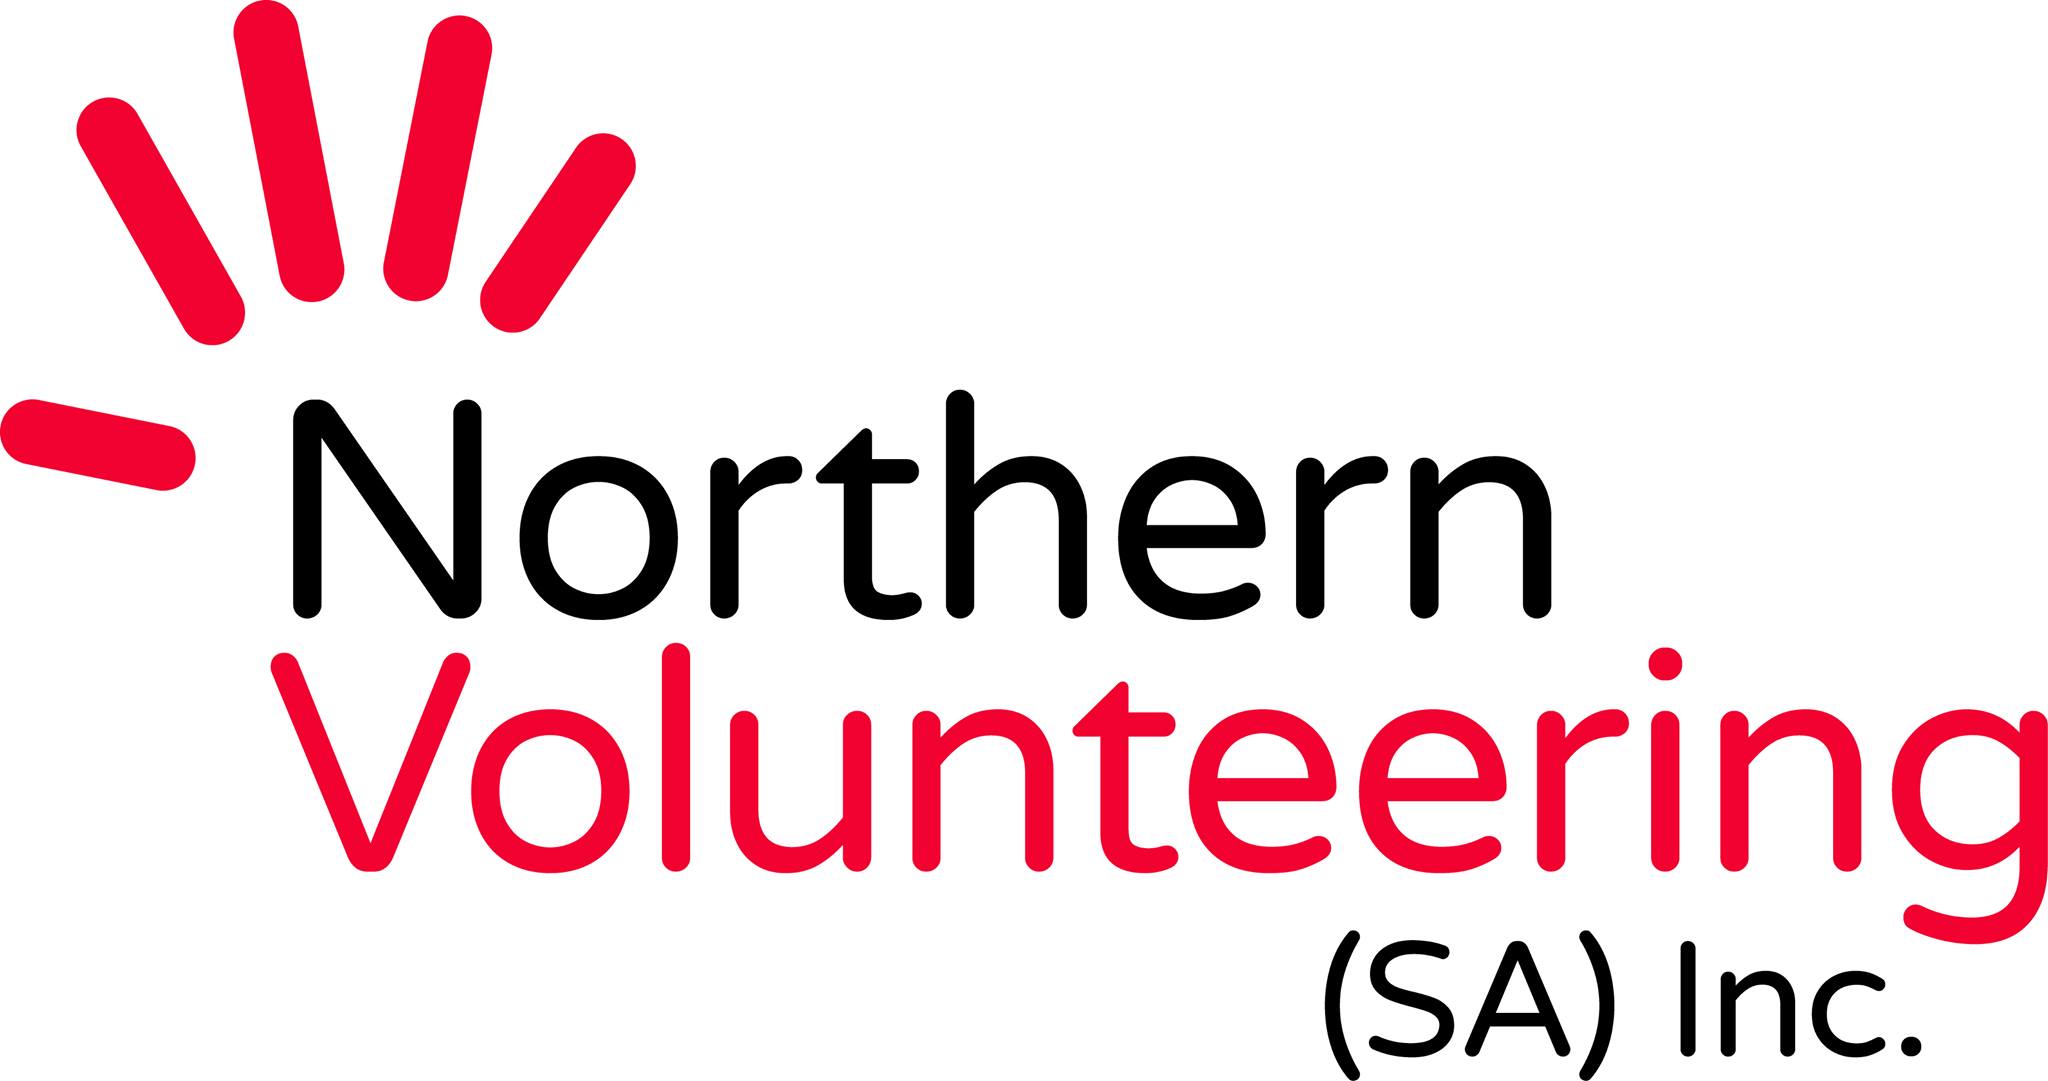 Bakûrî Volunteering SA Inc